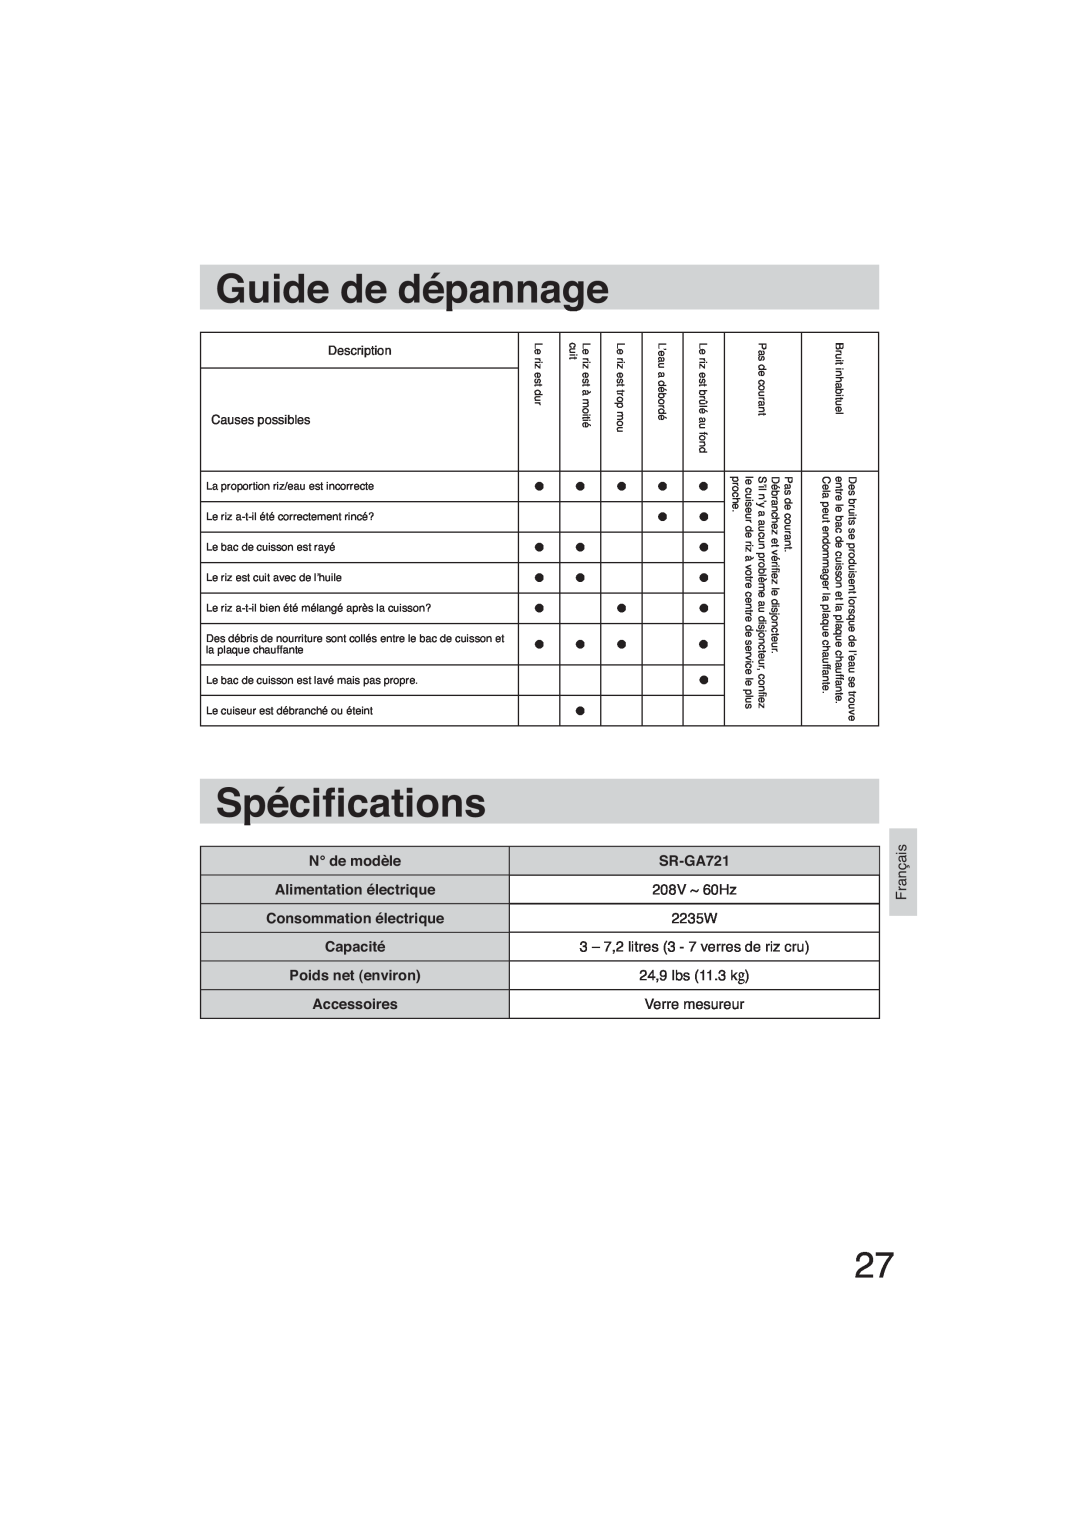 Panasonic SR-GA721 Guide de dépannage, Spéci cations, N de modèle, 2235W, Alimentation électrique, 208V ~ 60Hz, Capacité 